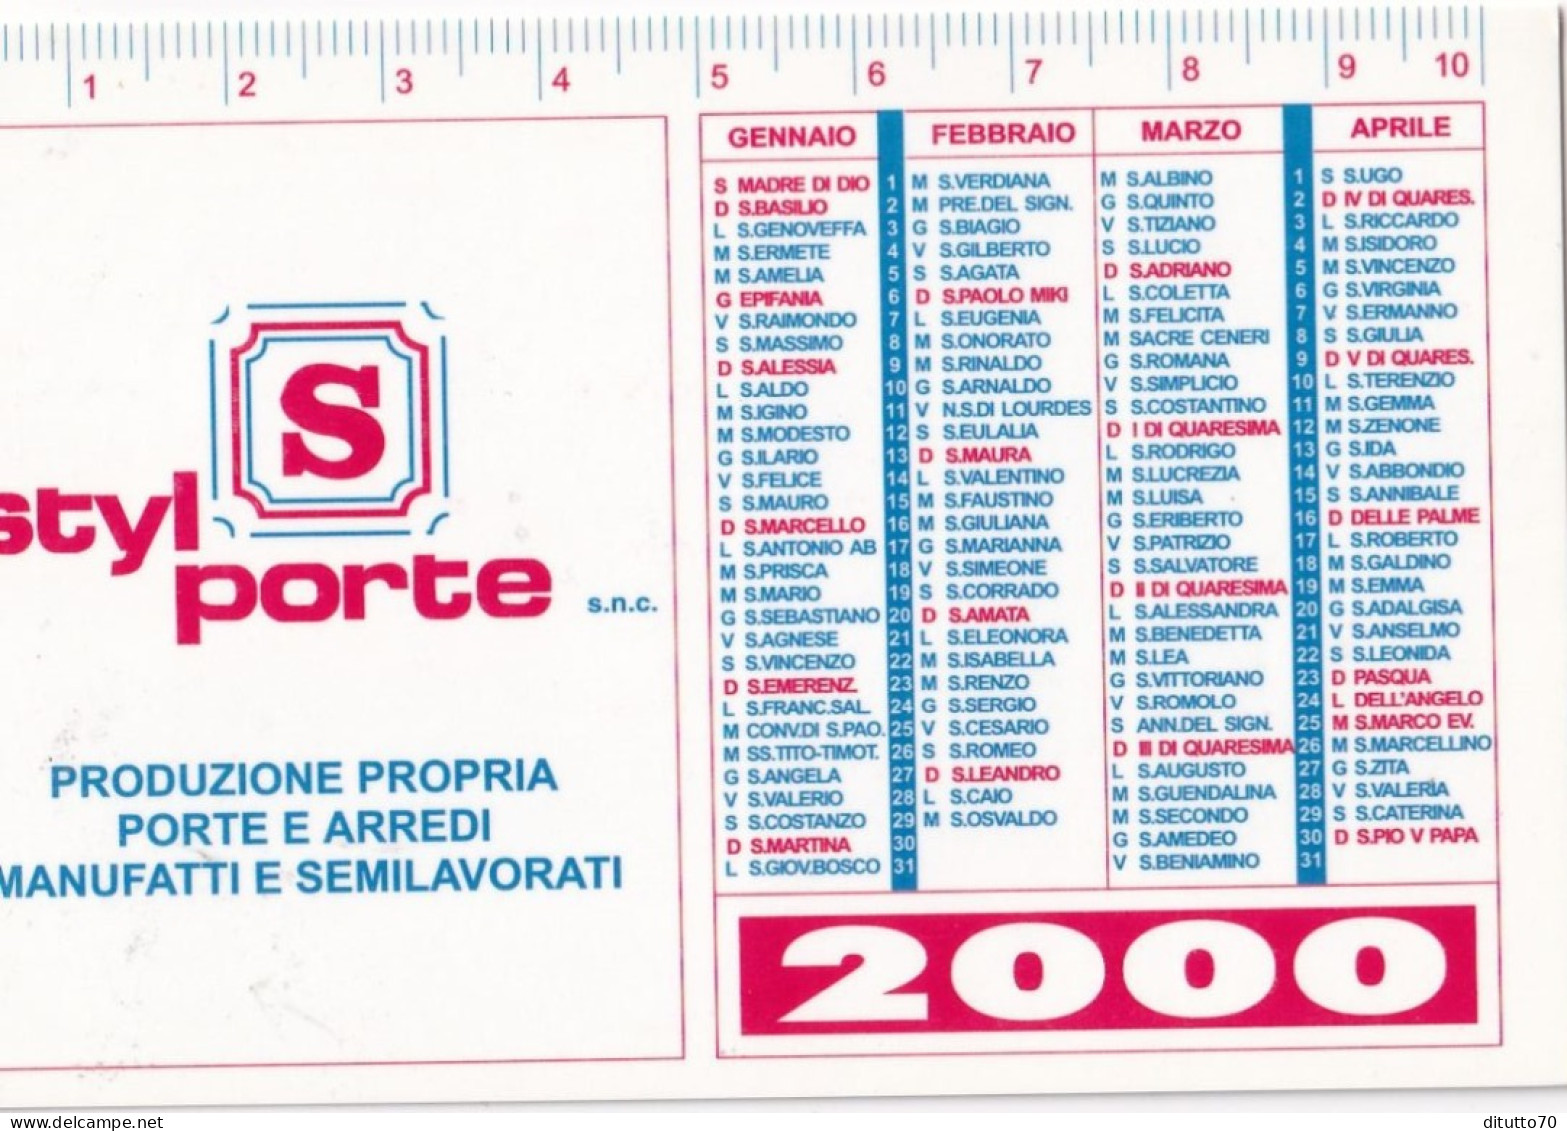 Calendarietto - Styl Porte - Rivalta - Torino - Anno 2000 - Klein Formaat: 1991-00